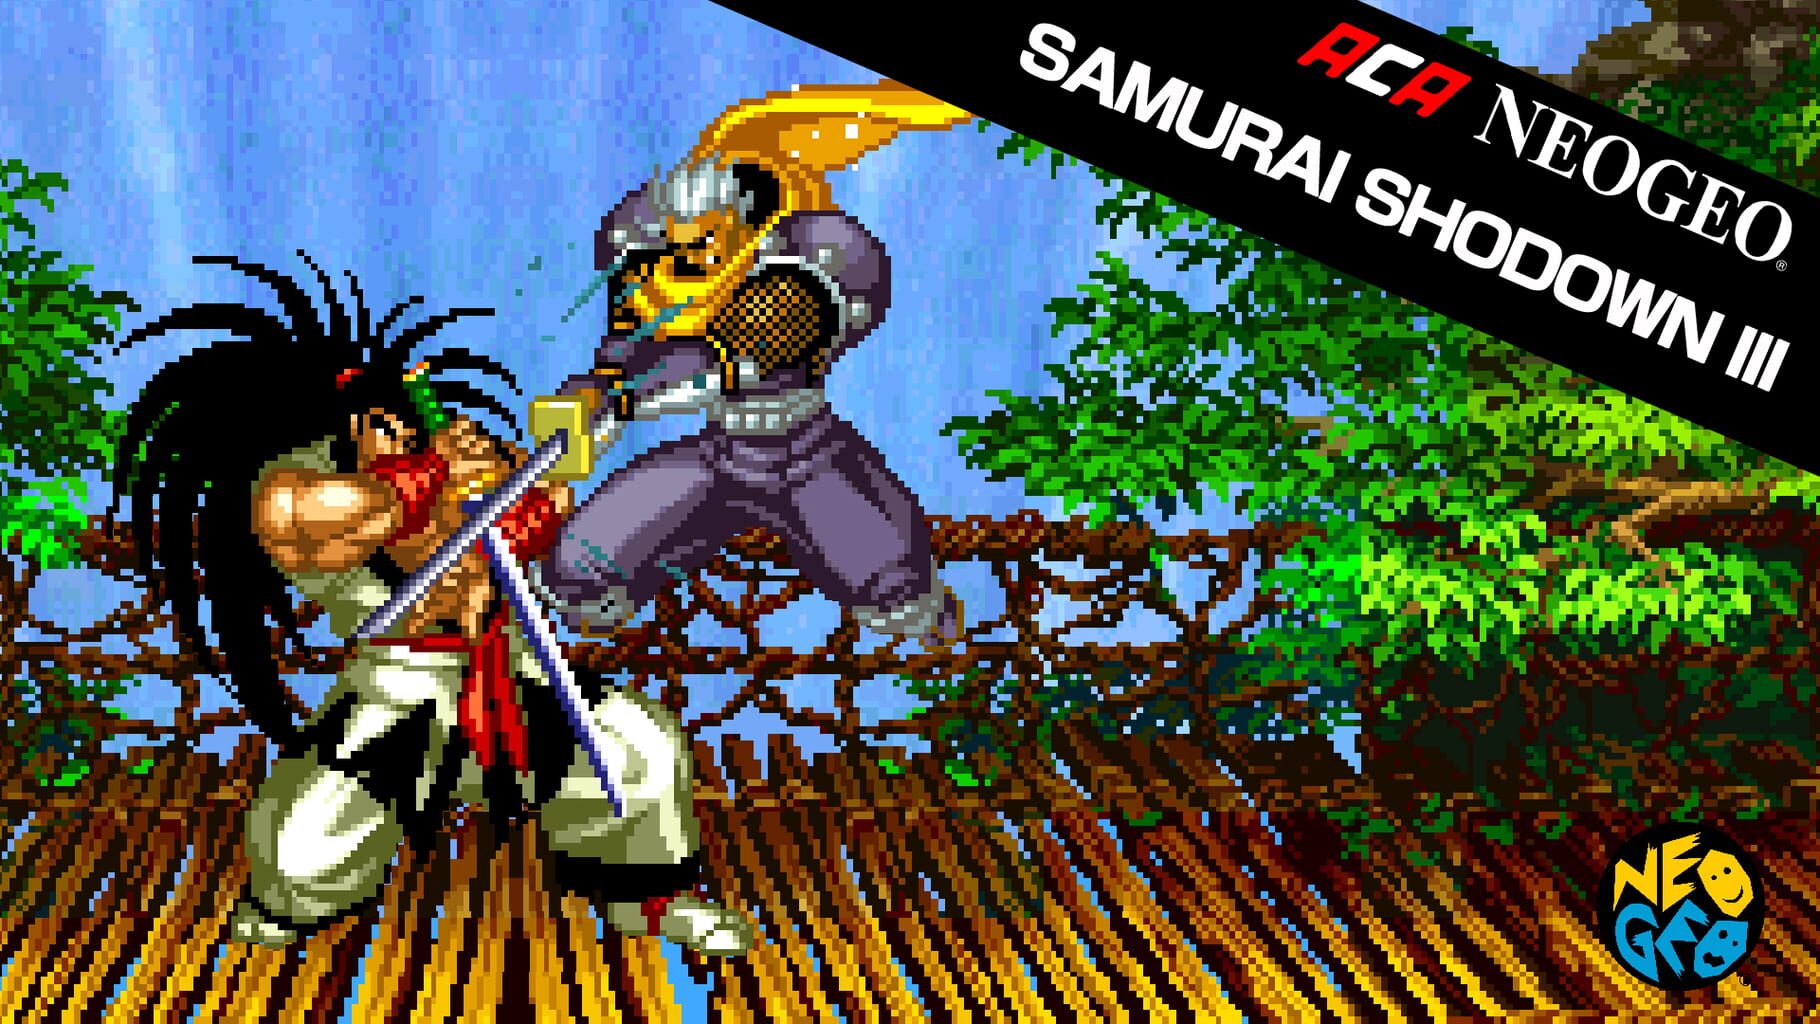 ACA Neo Geo: Samurai Shodown III artwork